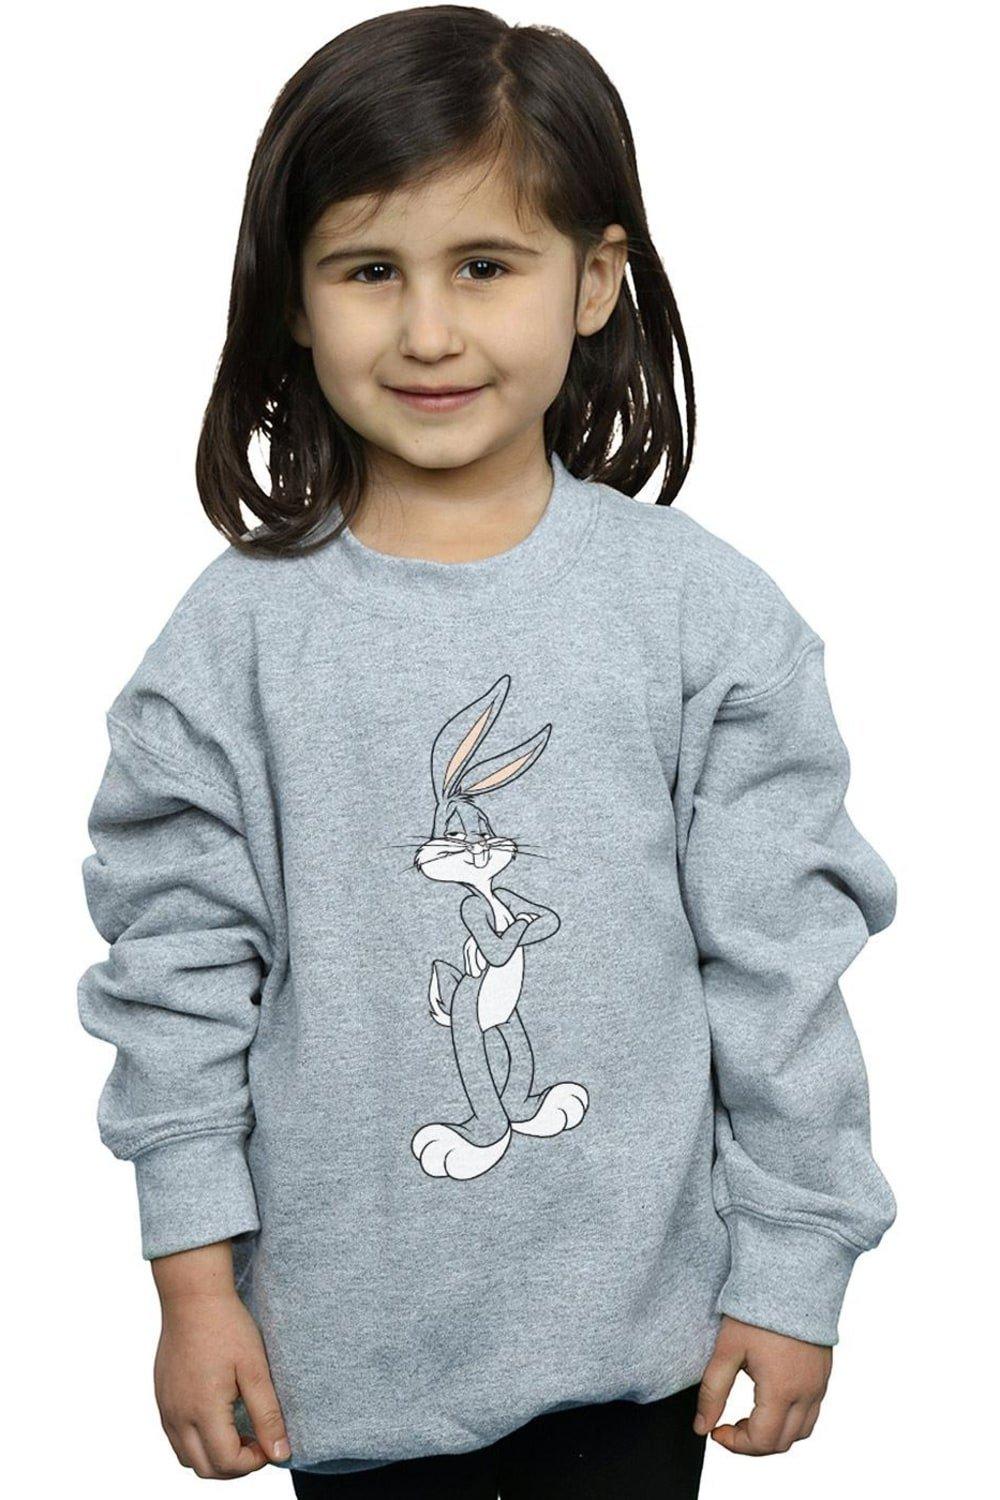 Bugs Bunny Crossed Arms Sweatshirt